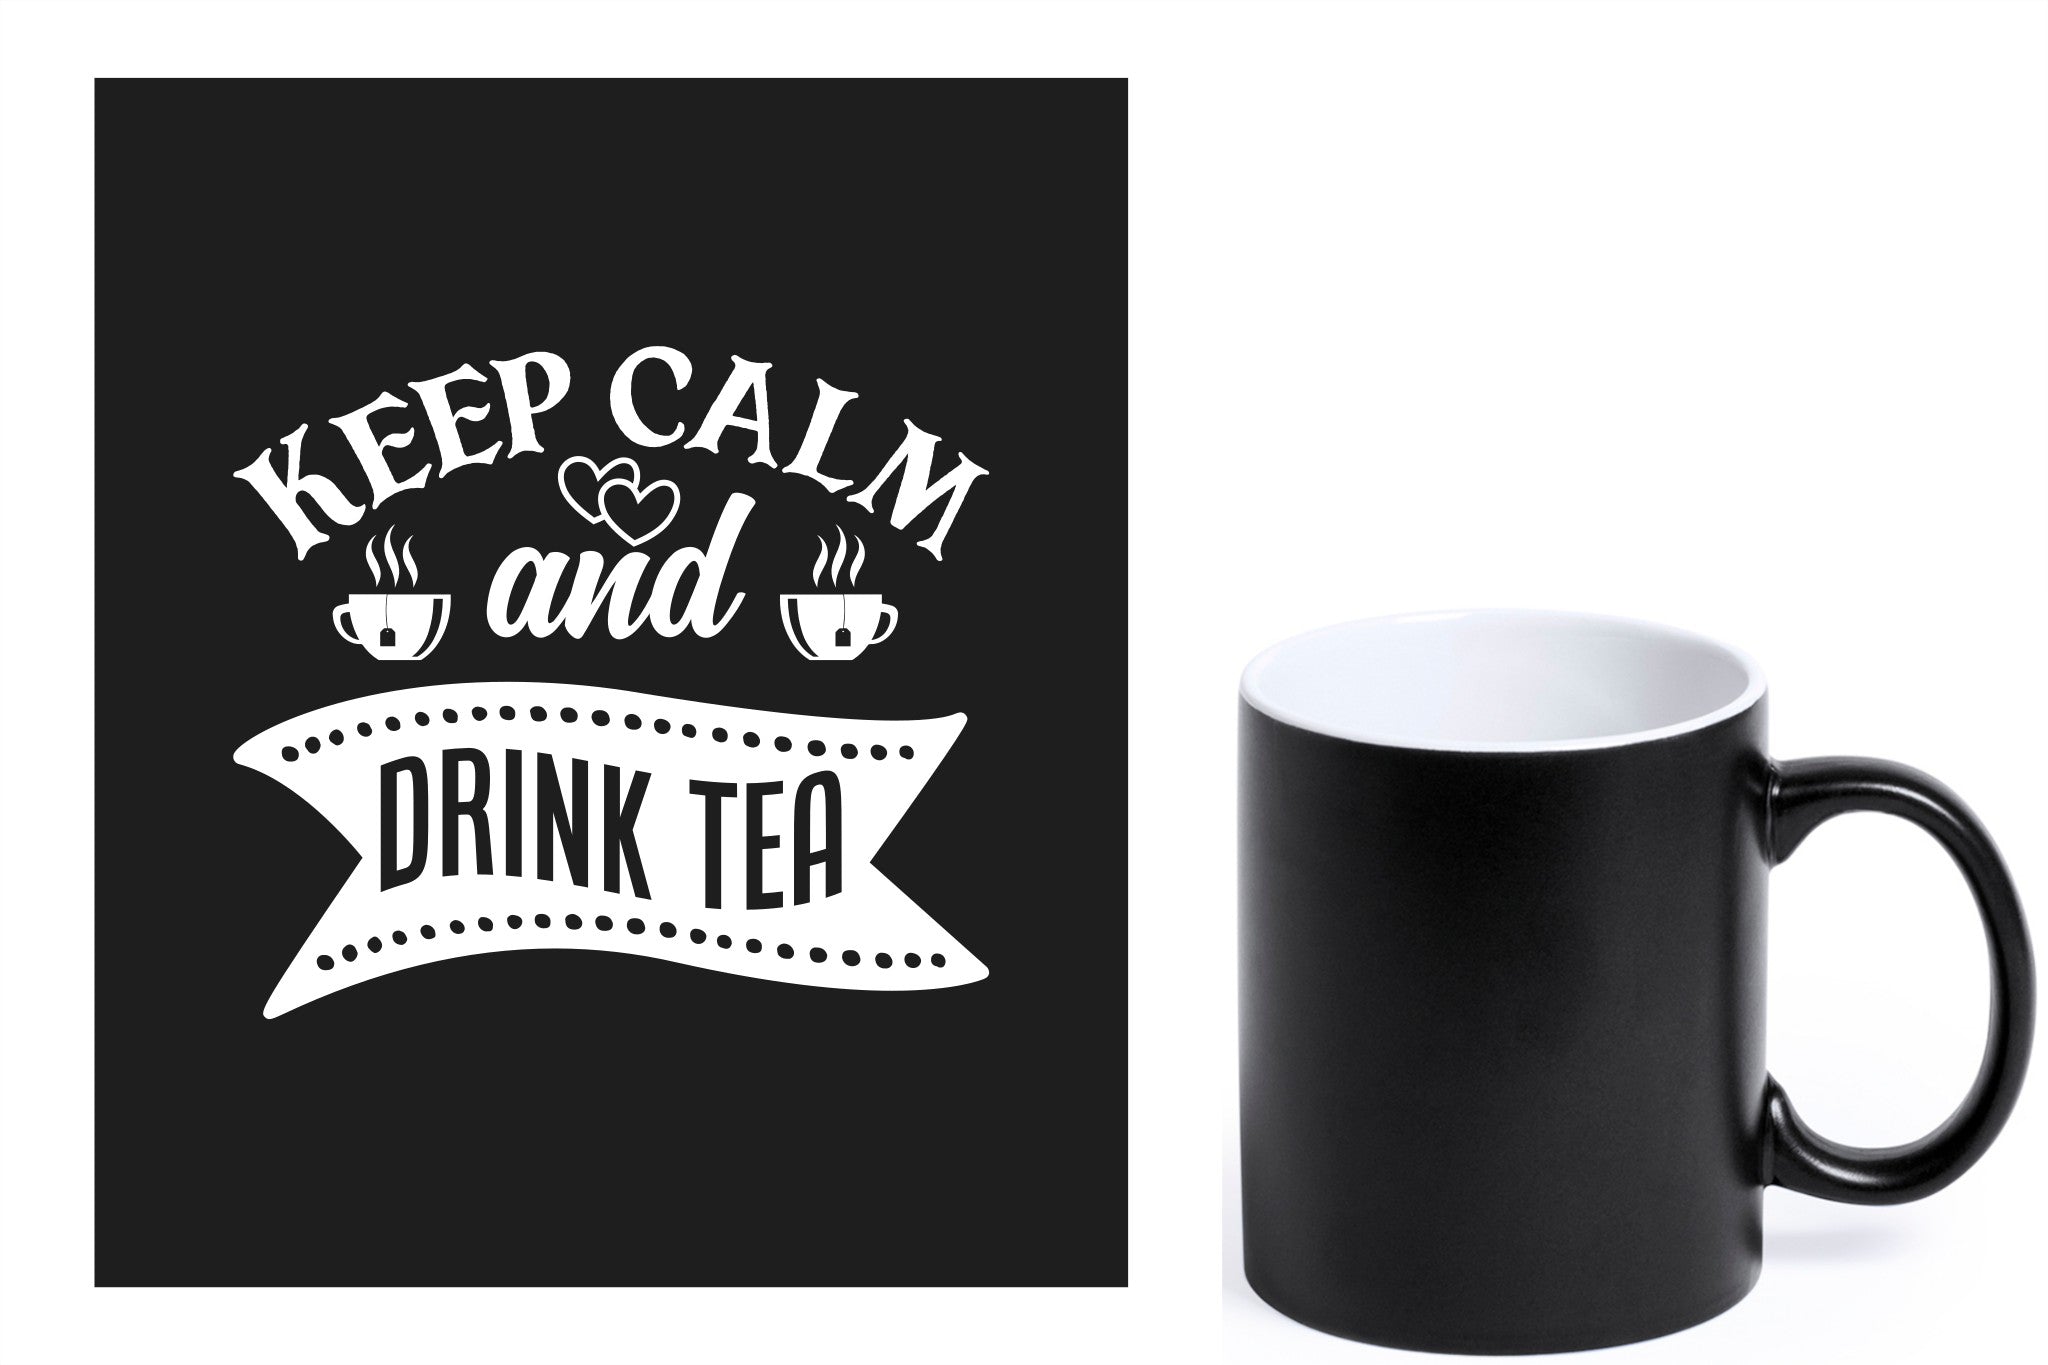 zwarte keramische mok met witte gravure  'Keep calm and drink tea'.